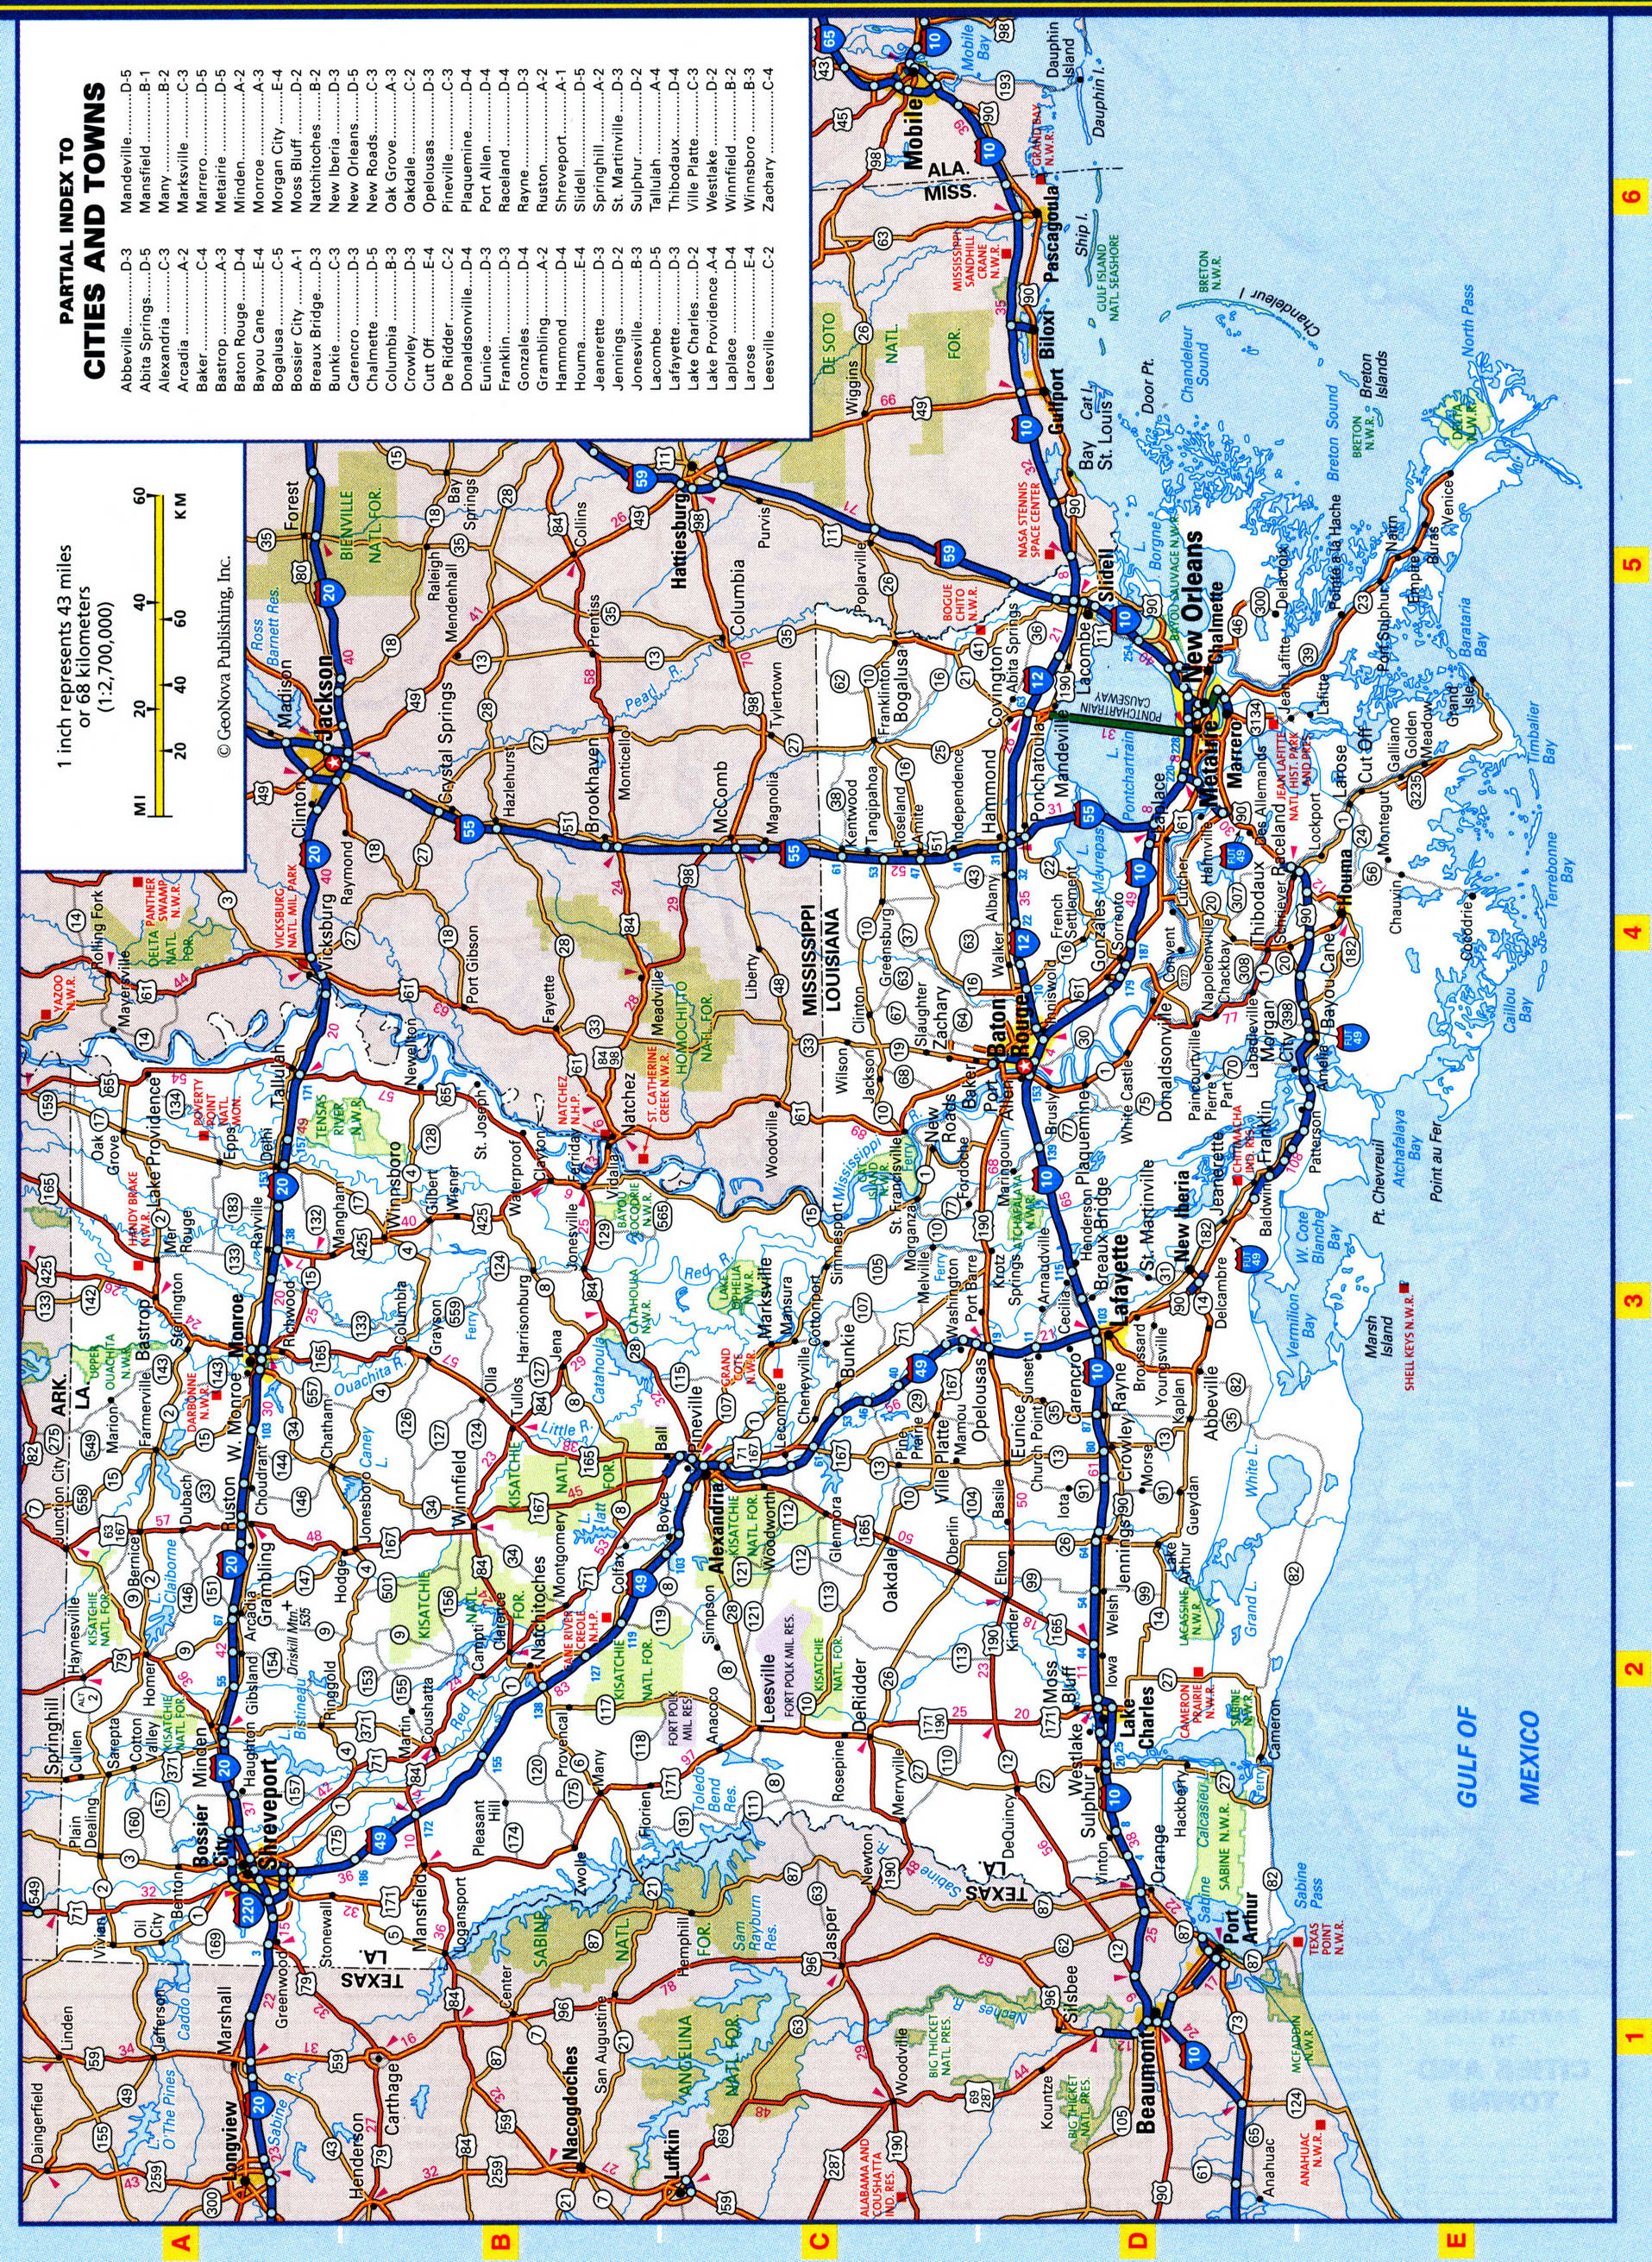 Louisiana Road Map, Louisiana Highway Map